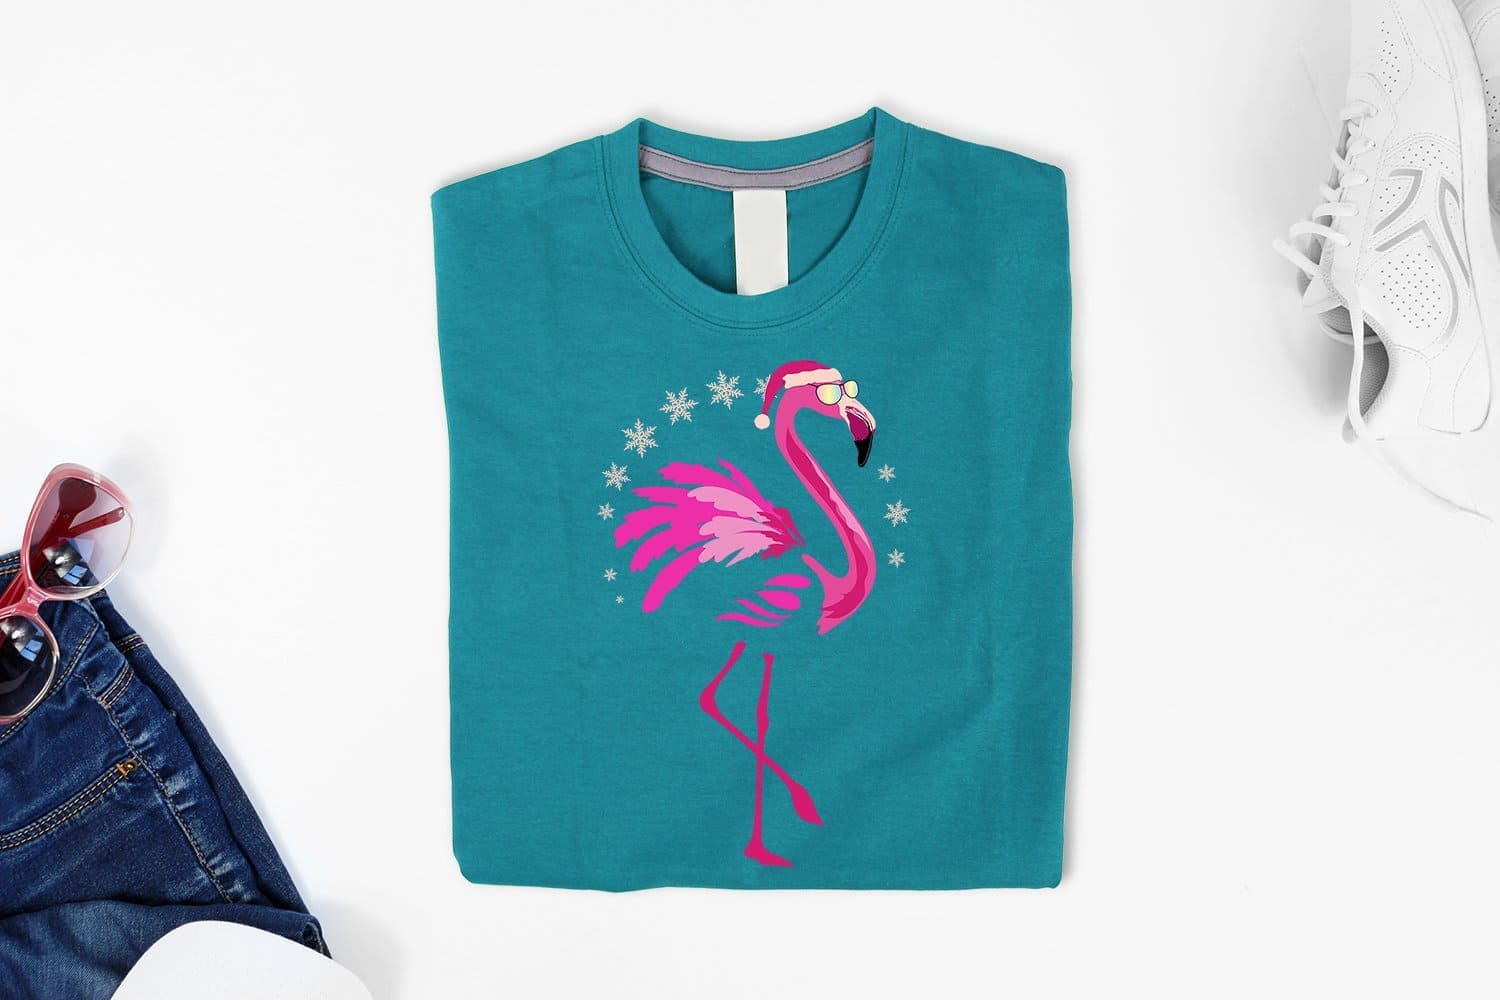 Christmas flamingo on teal tshirt mockup.